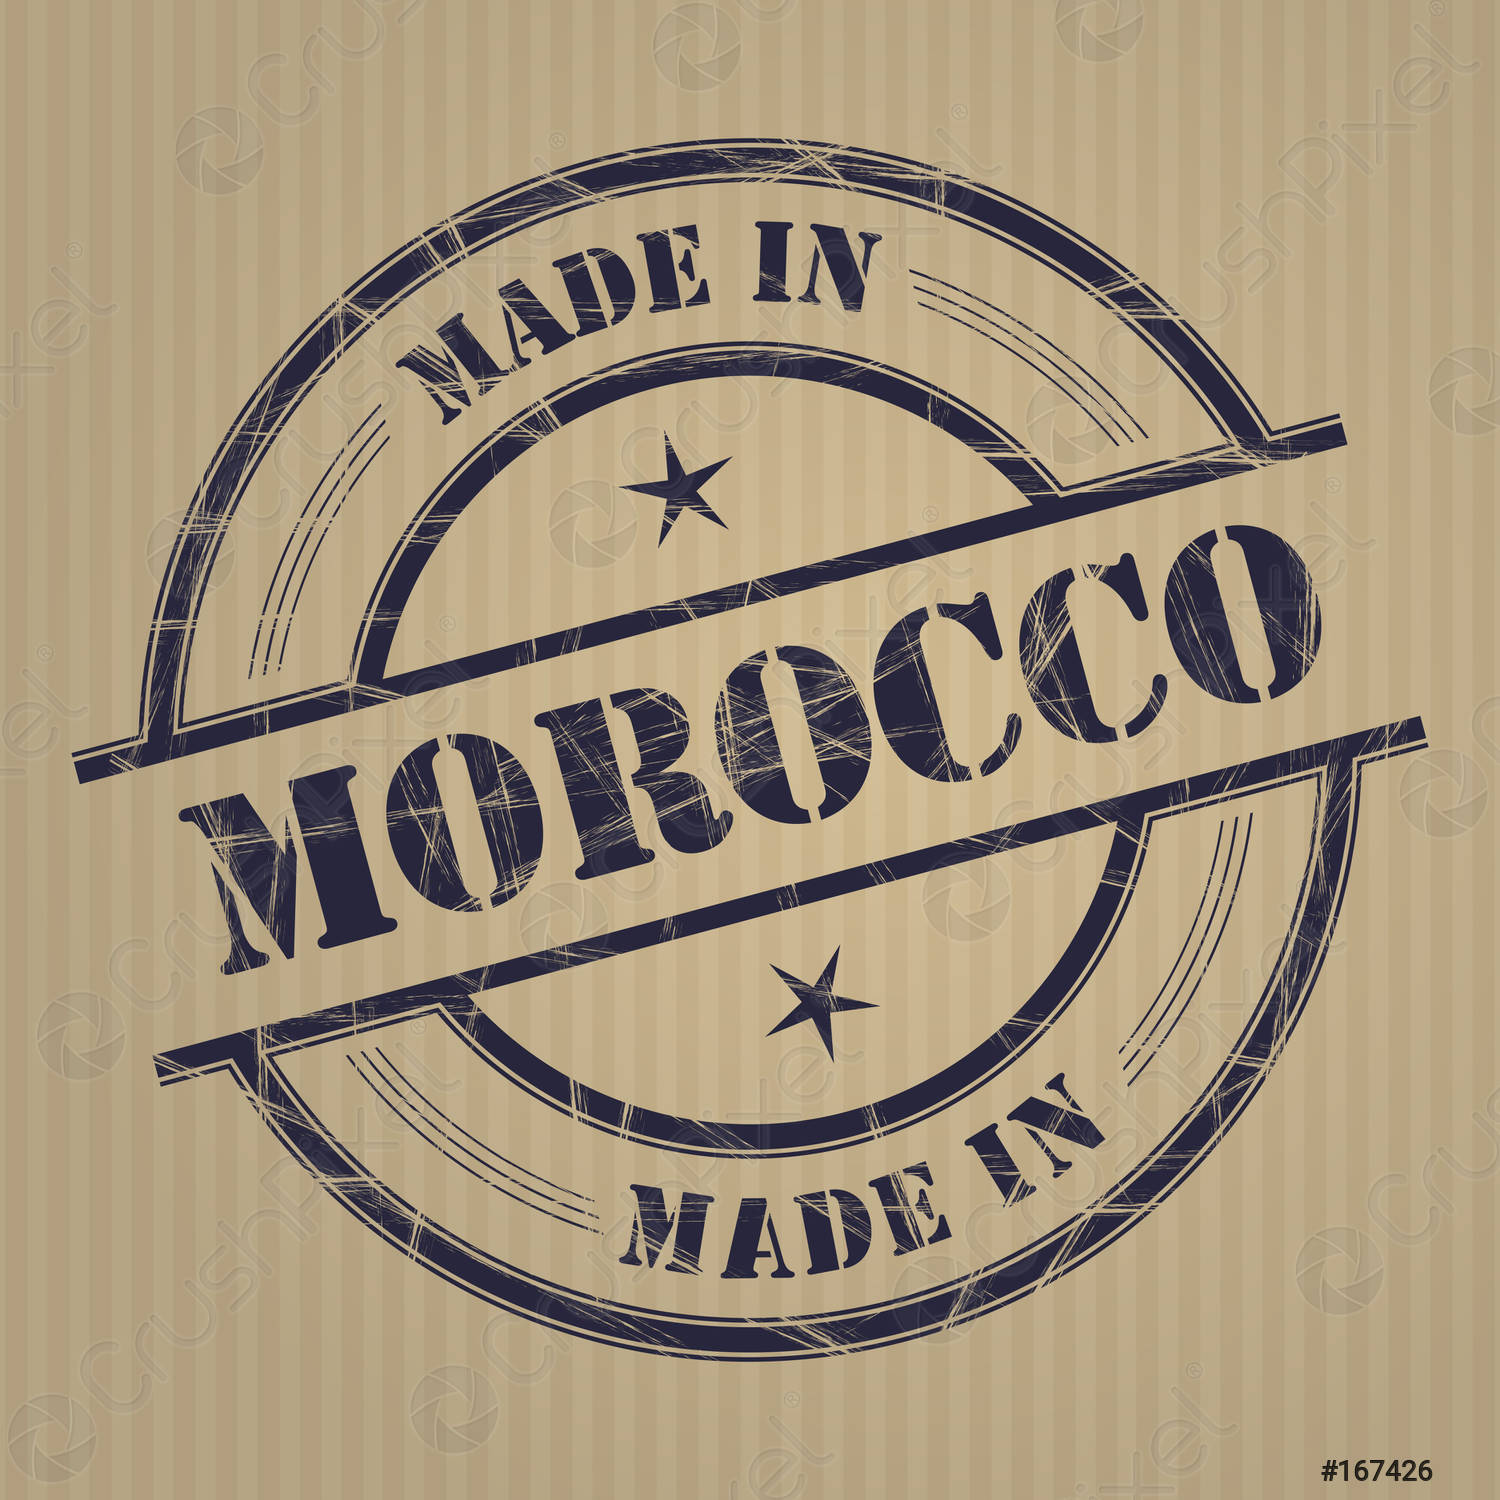 Made in Morocco : Ce label a-t-il gagné la confiance des Marocains